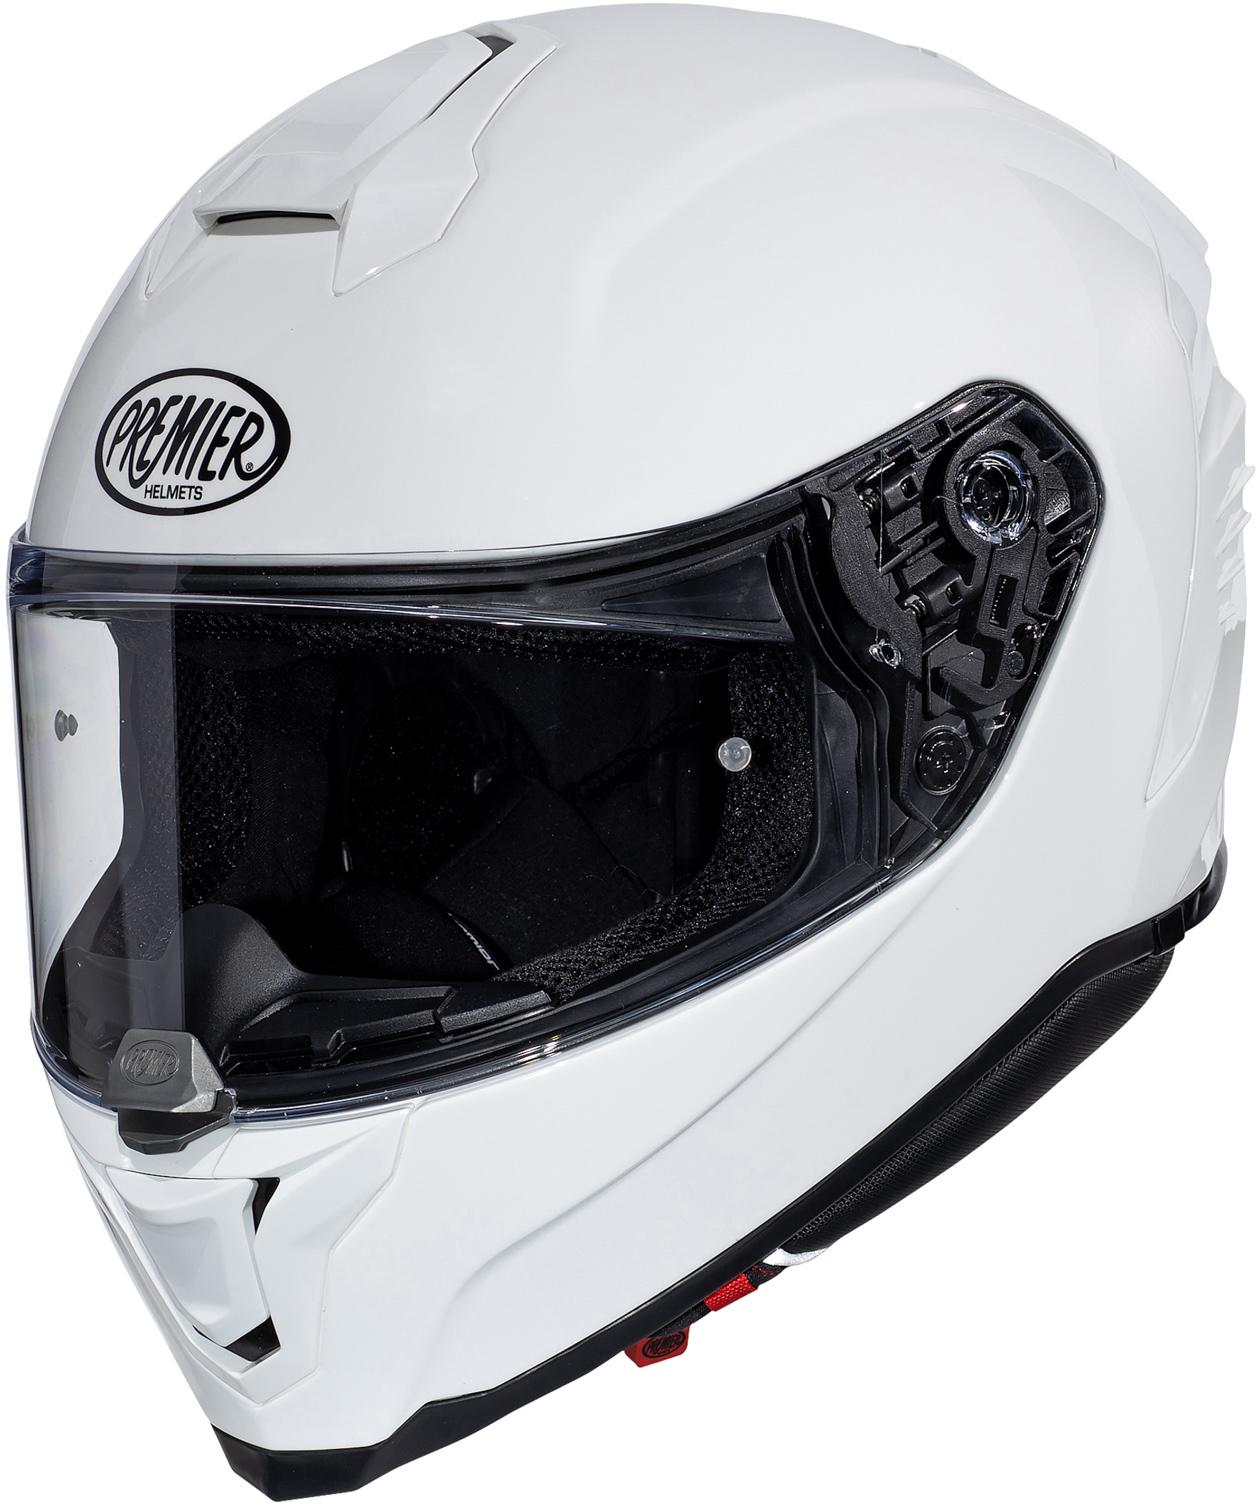 Premier Hyper Full Face Motorcycle Helmet - White, 2Xl